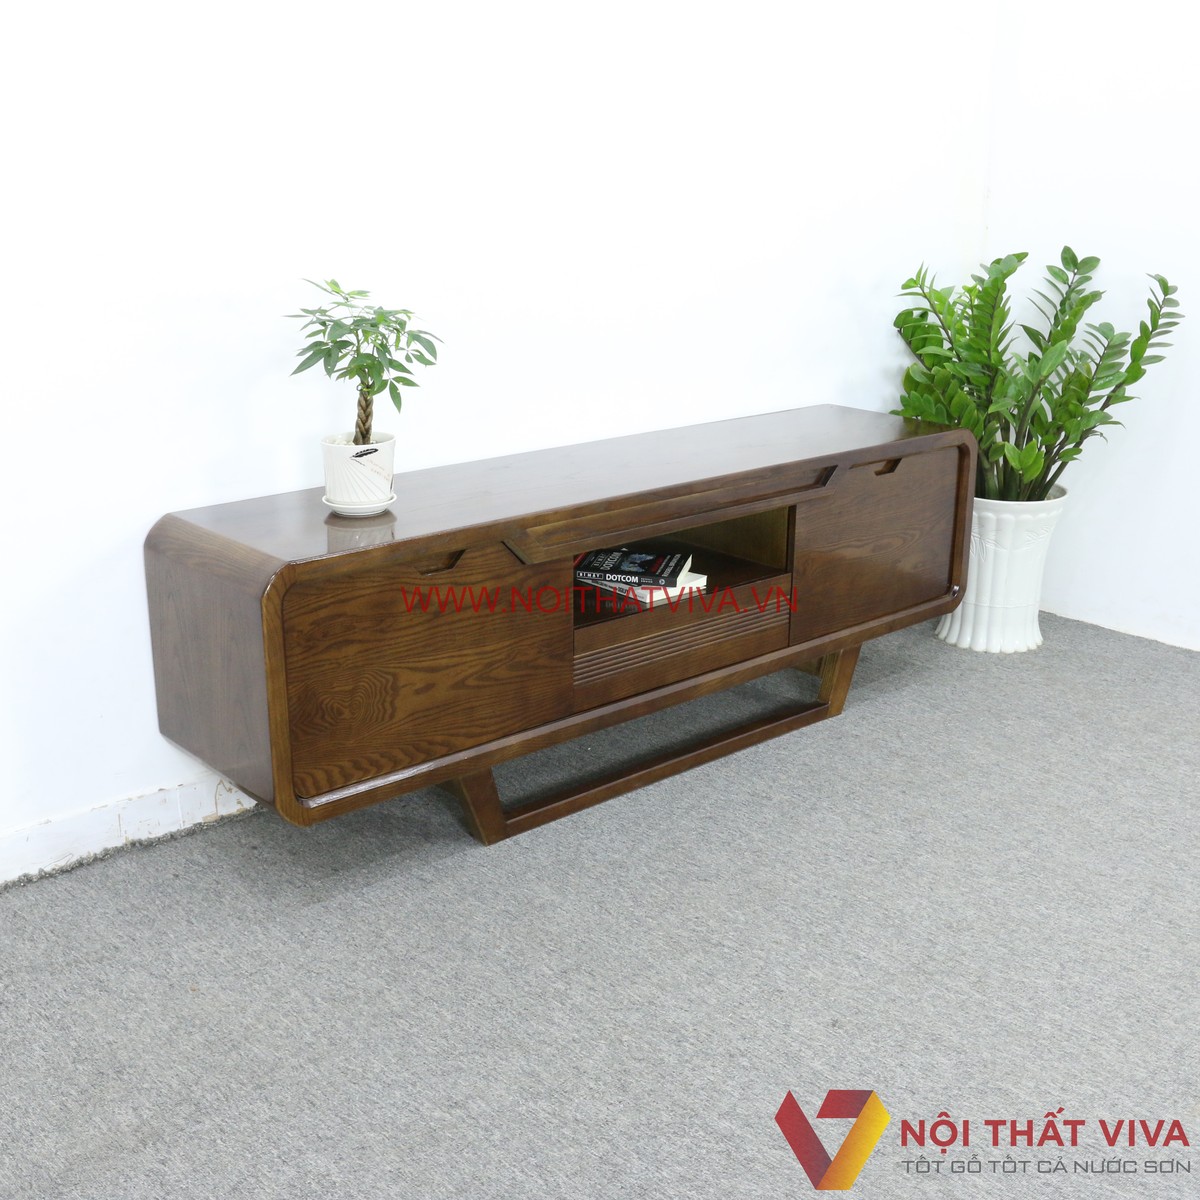 Kệ TiVi gỗ tự nhiên: Nếu bạn đang tìm kiếm một sản phẩm độc đáo và gần gũi với thiên nhiên, hãy lựa chọn kệ TiVi gỗ tự nhiên. Với chất liệu gỗ đẹp và thiết kế đẳng cấp, sản phẩm này không chỉ làm cho phòng khách trở nên ấm áp, mà còn đem lại cảm giác thư giãn mỗi ngày.